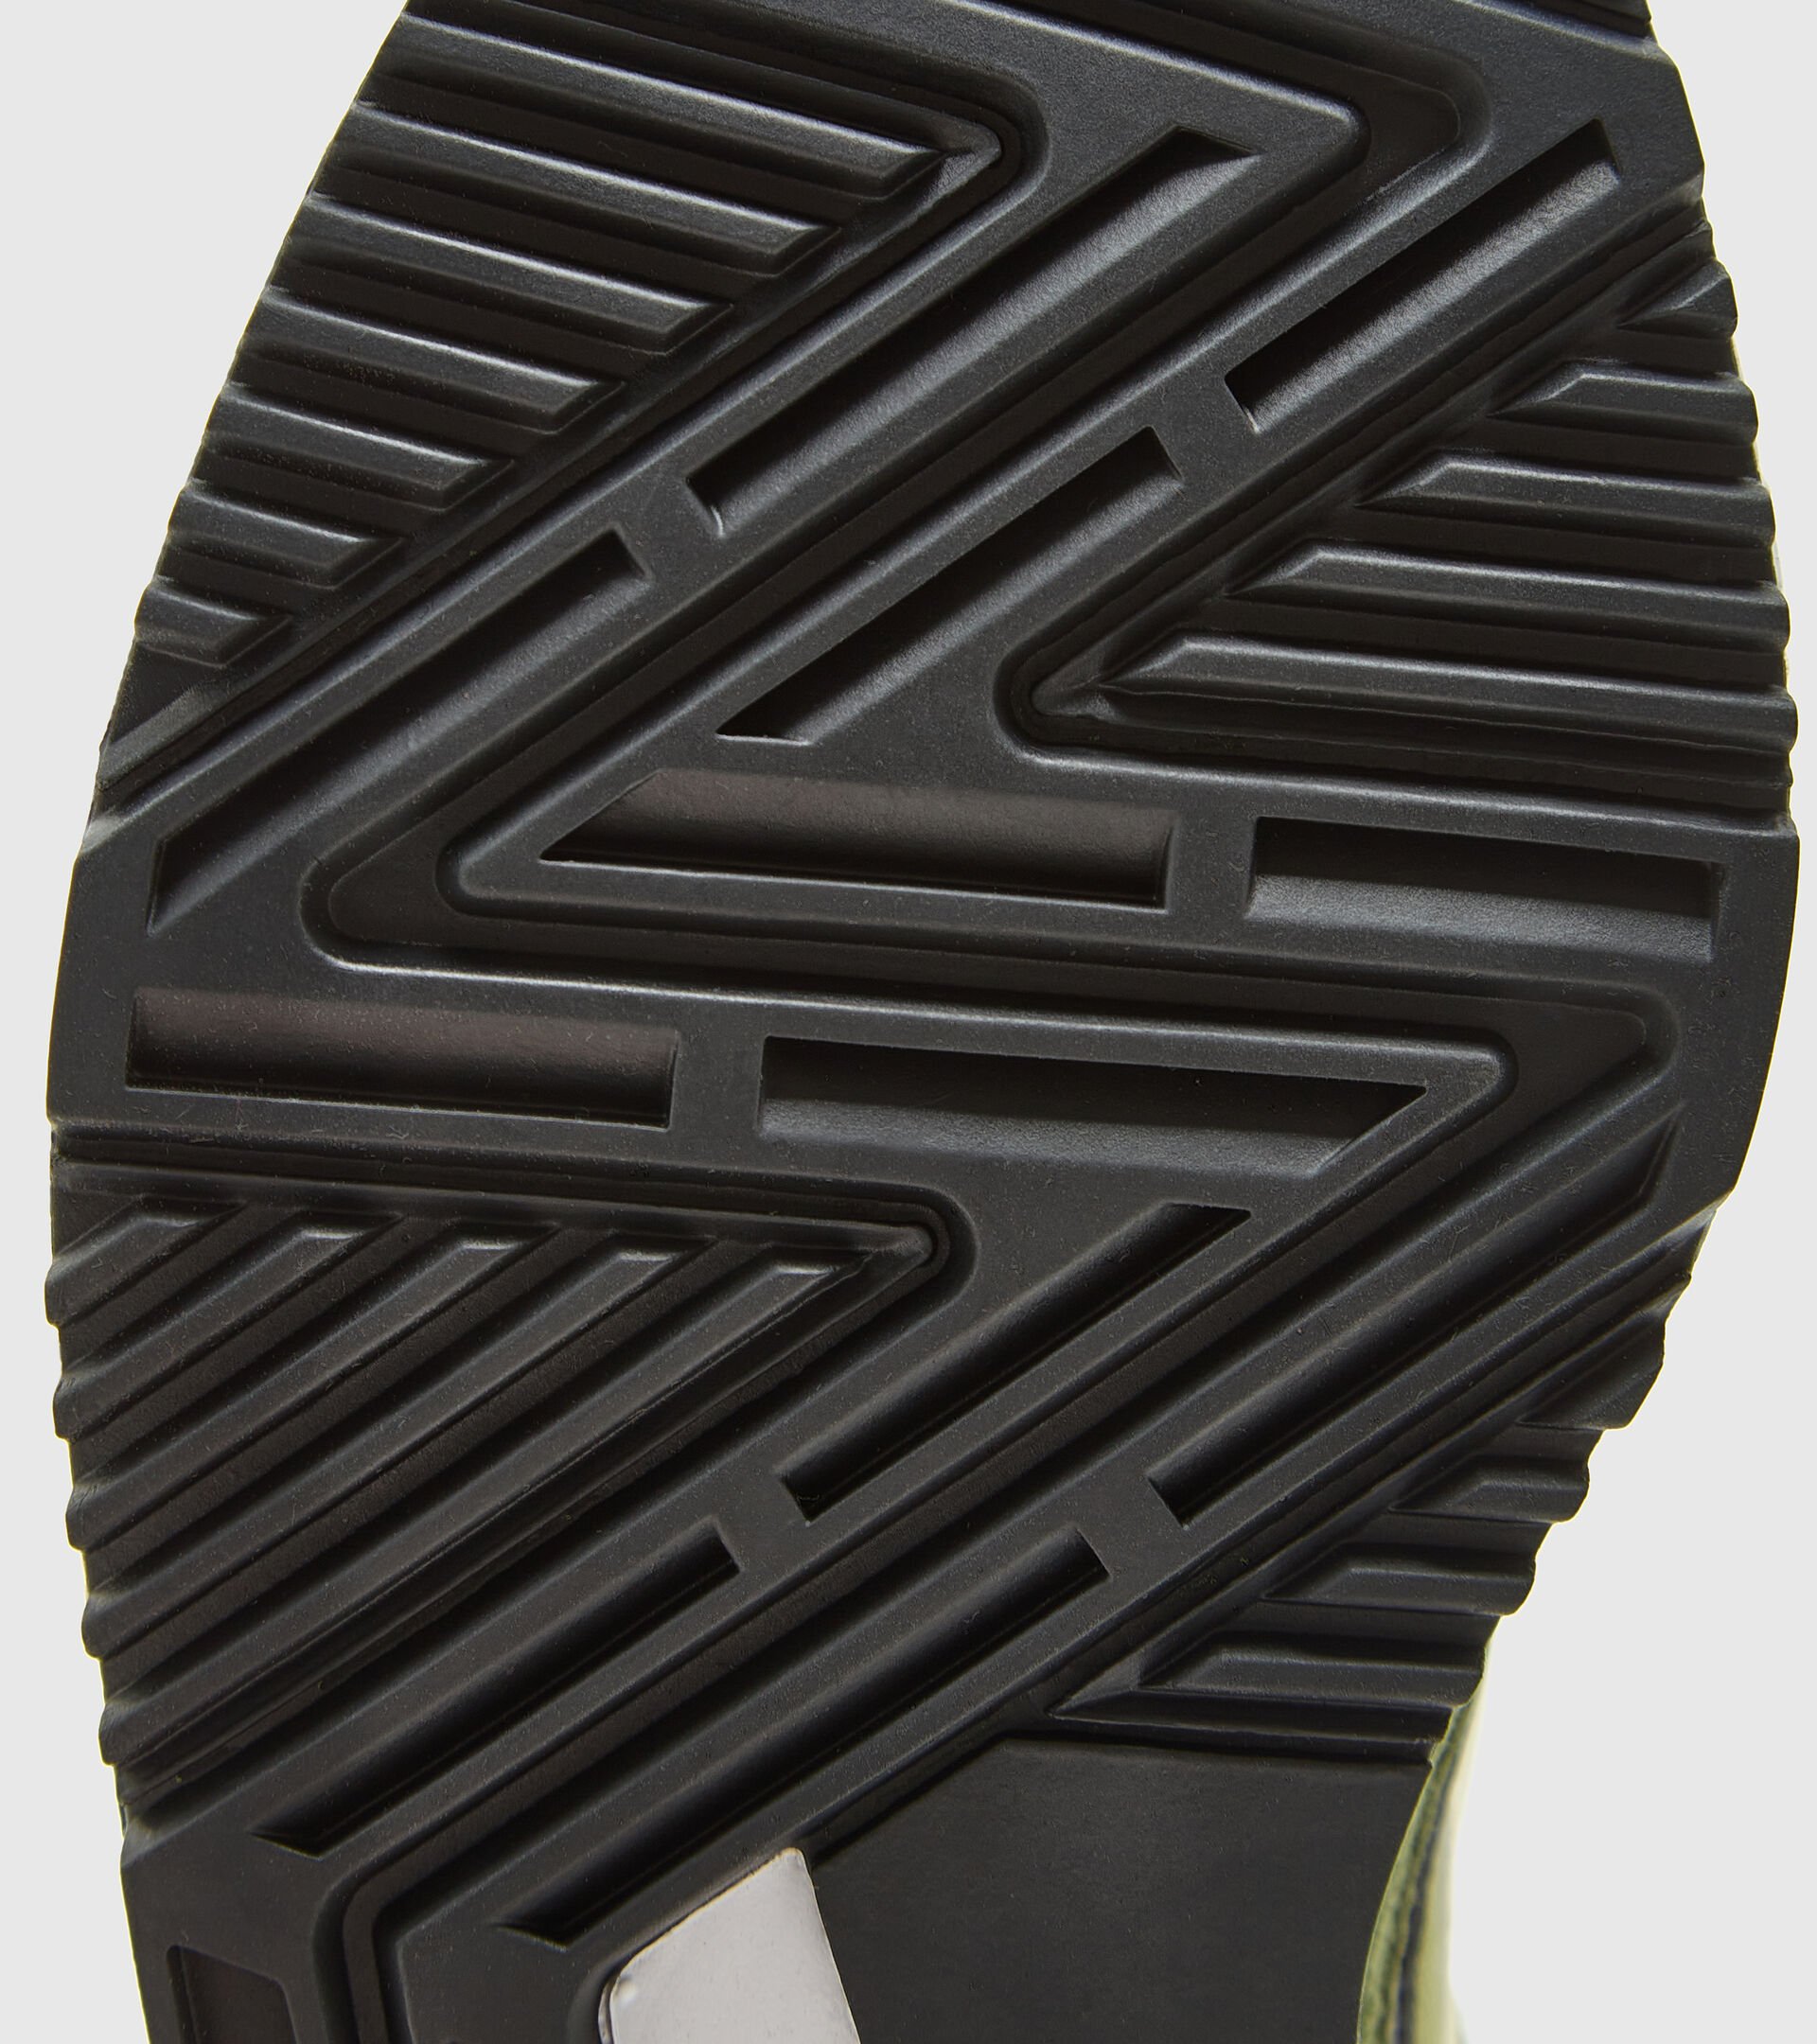 Zapatillas deportivas - Unisex V7000 VRD CALLISTE/OLIVINO/BG POLILL - Diadora